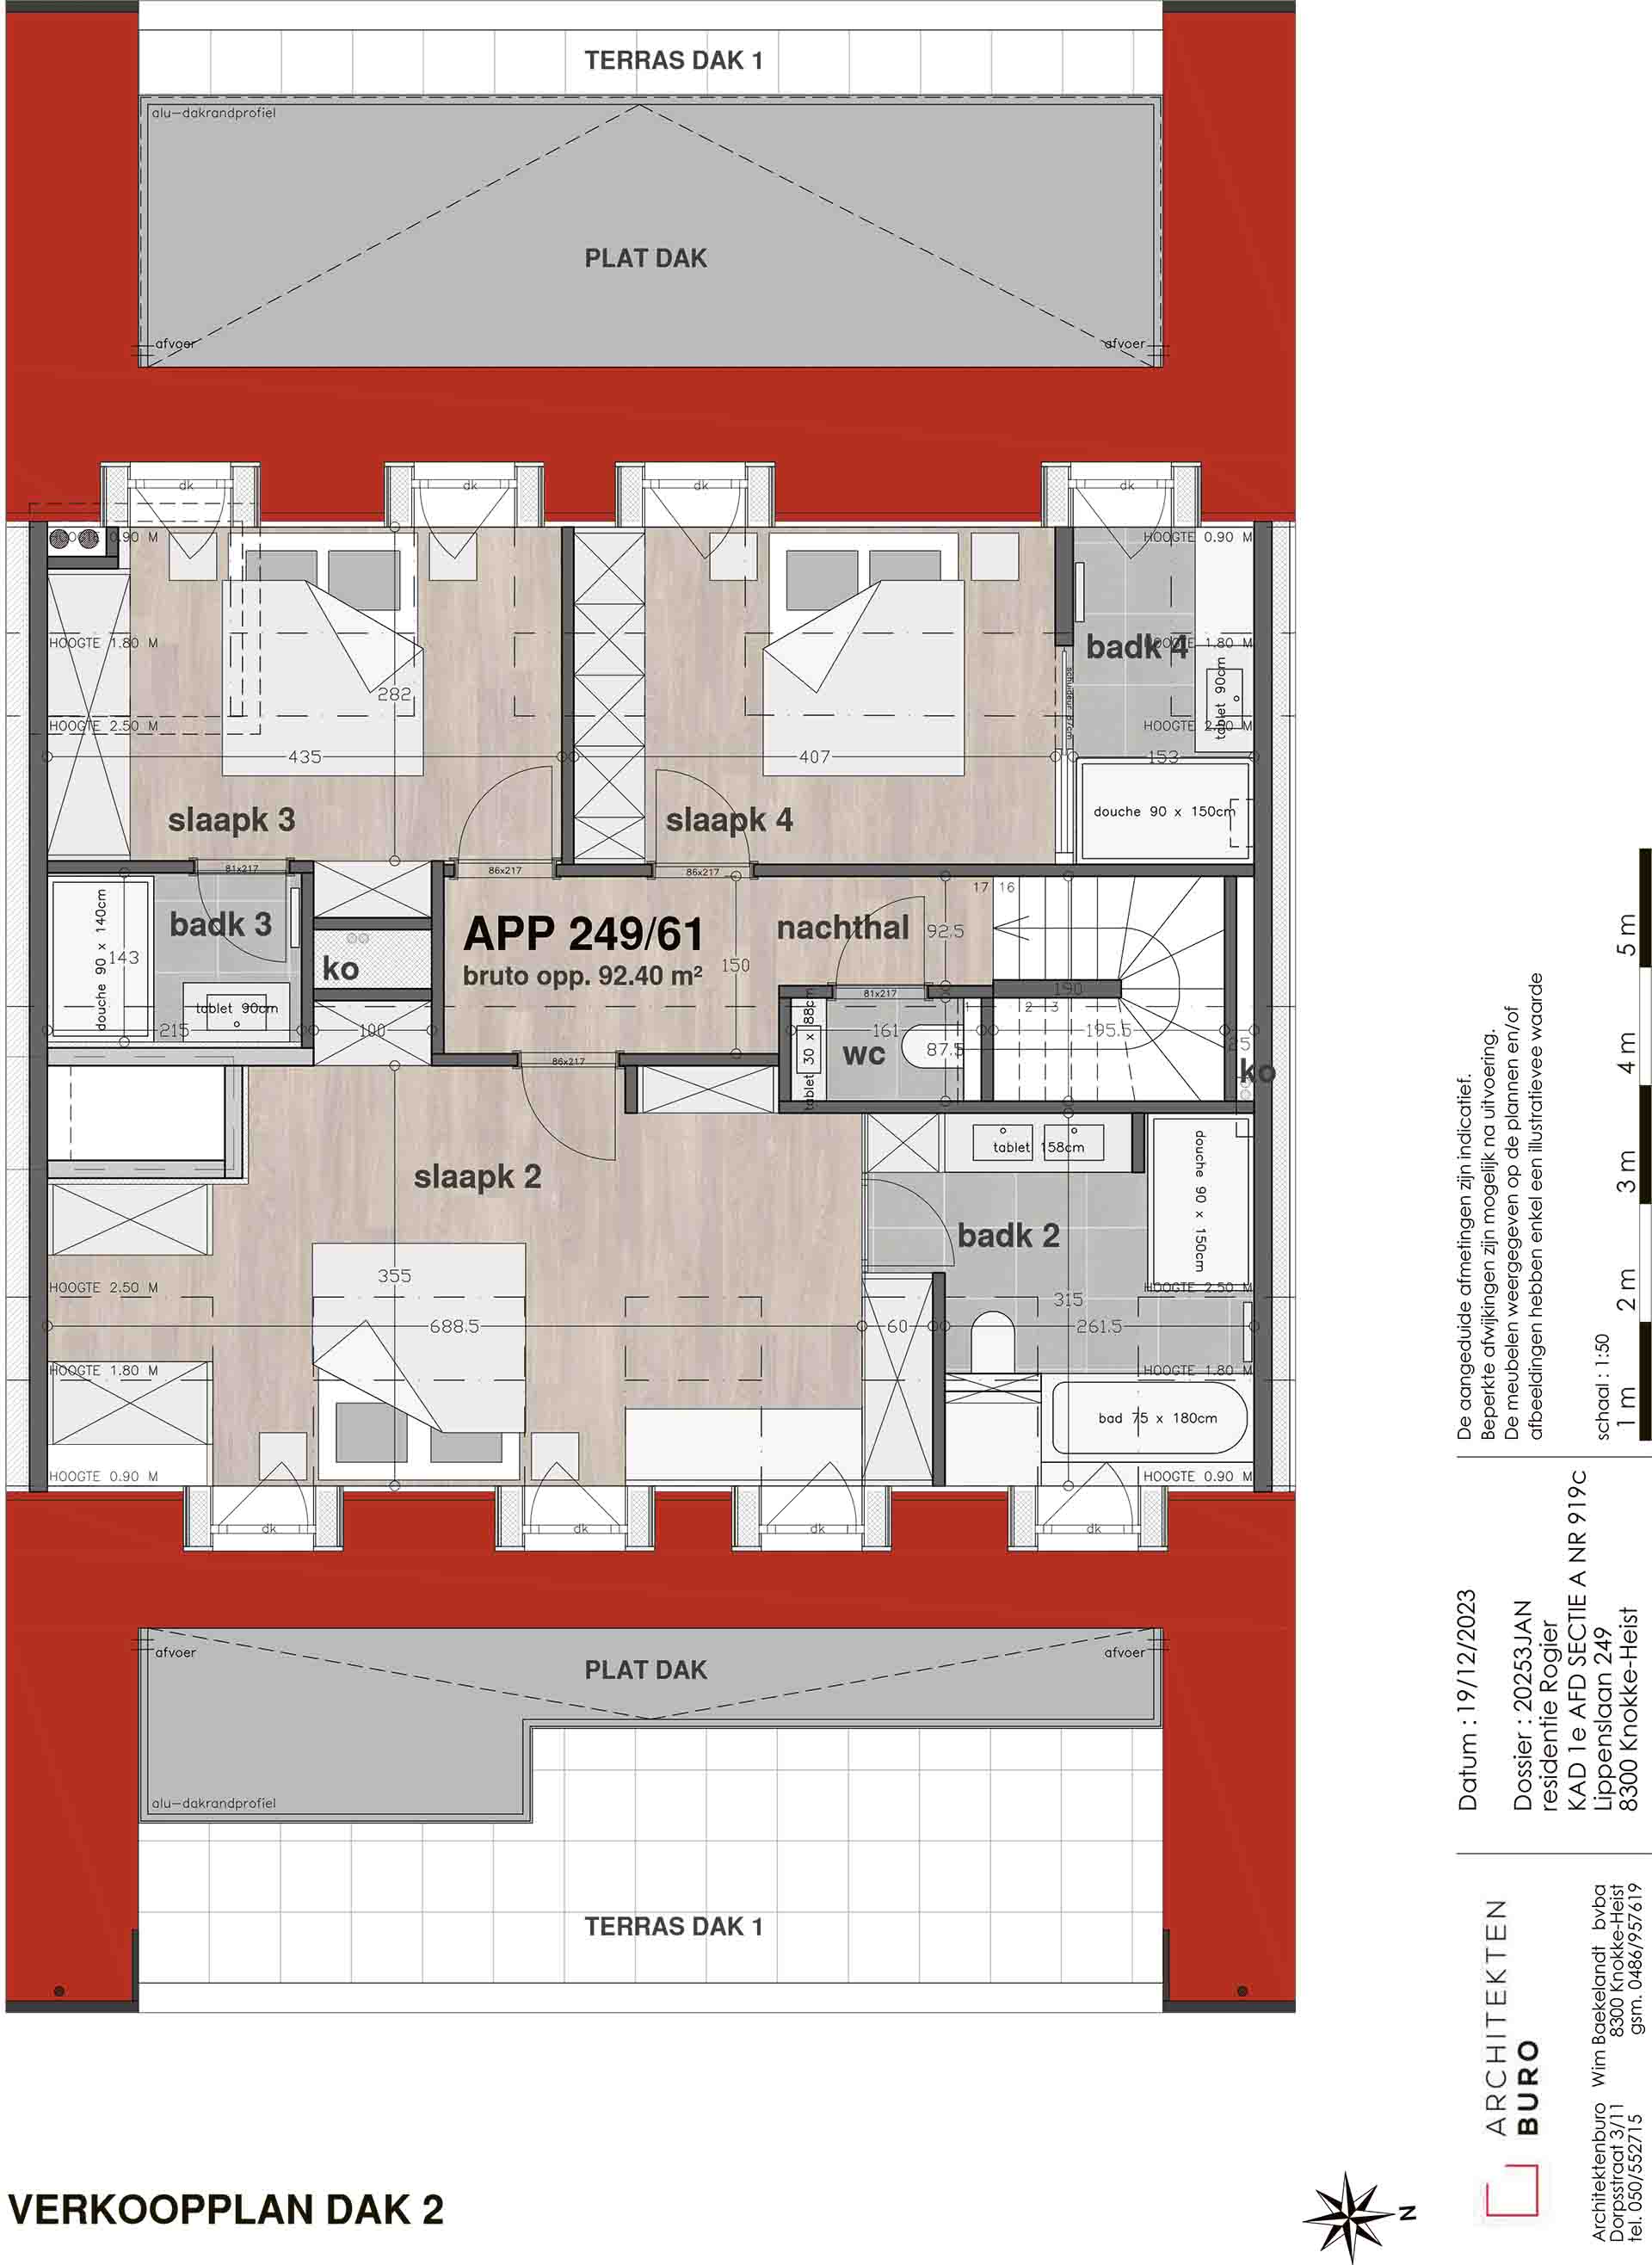 Residentie <br/> Rogier - image appartement-te-koop-knokke-residentie-rogier-plan-verdieping-7 on https://hoprom.be